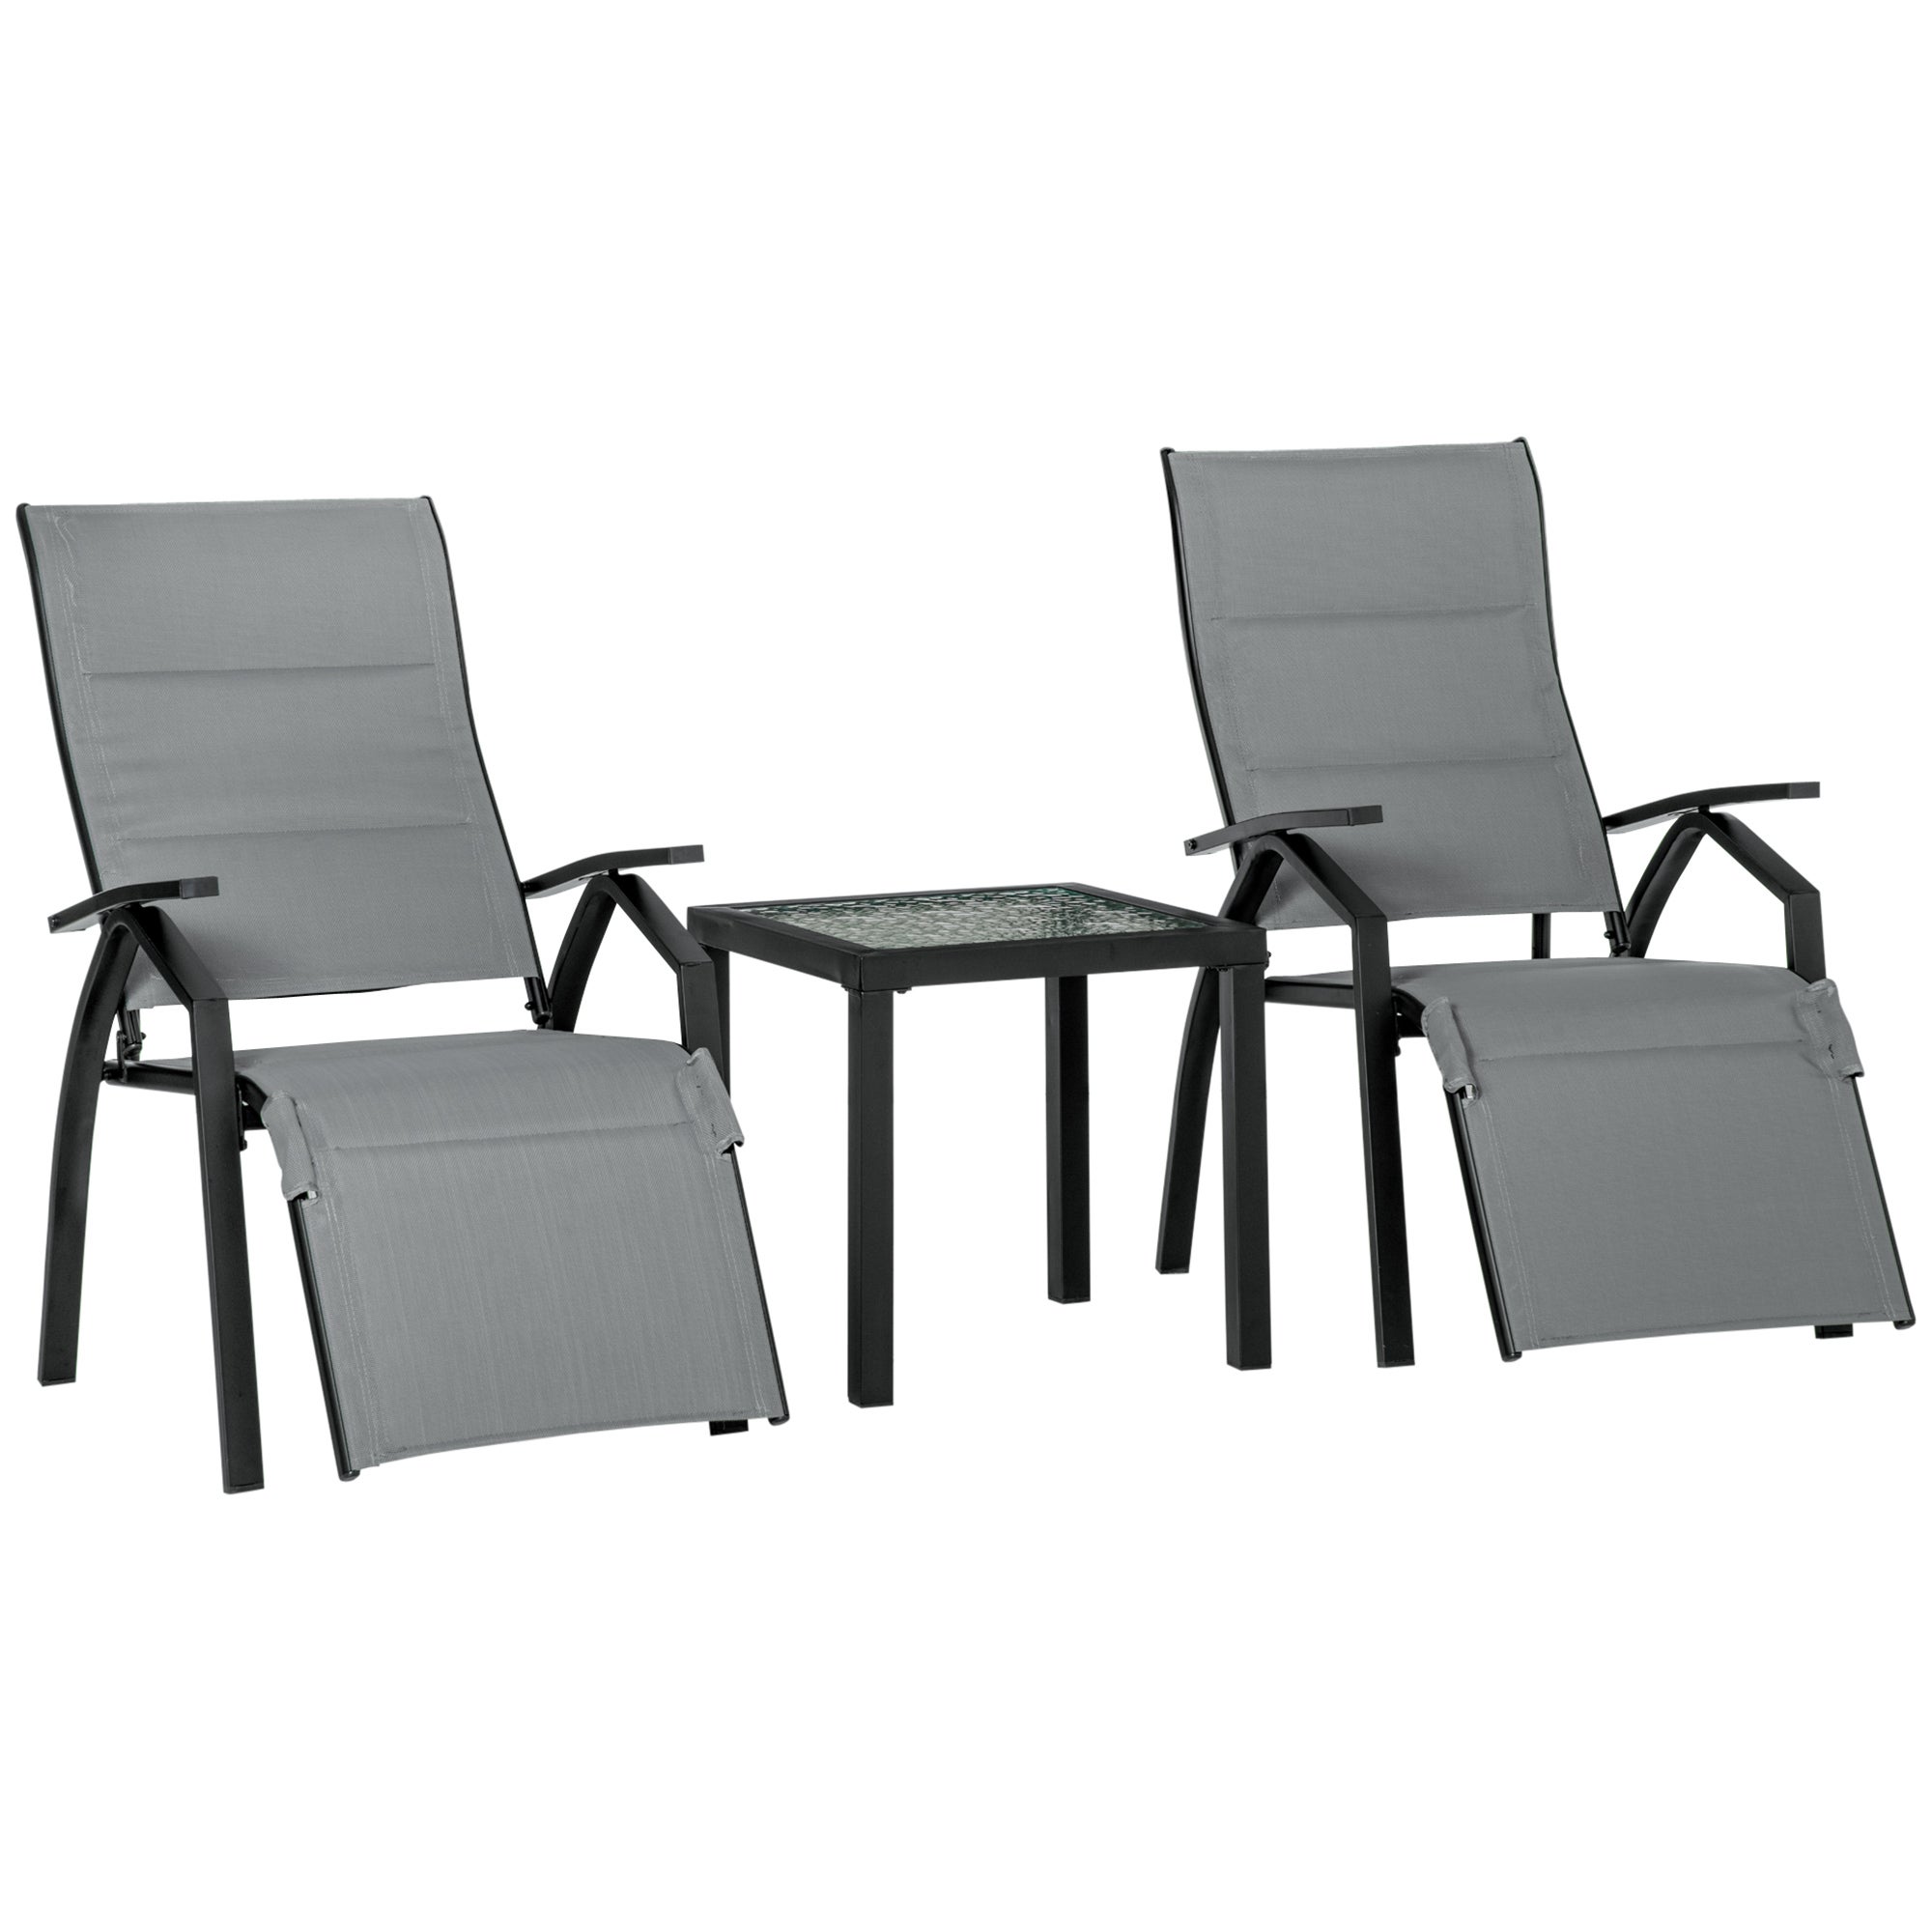 2x Argento 7 posizione del sole reclinabile a Modern Outdoor Sedia Pieghevole da giardino reclinabile 